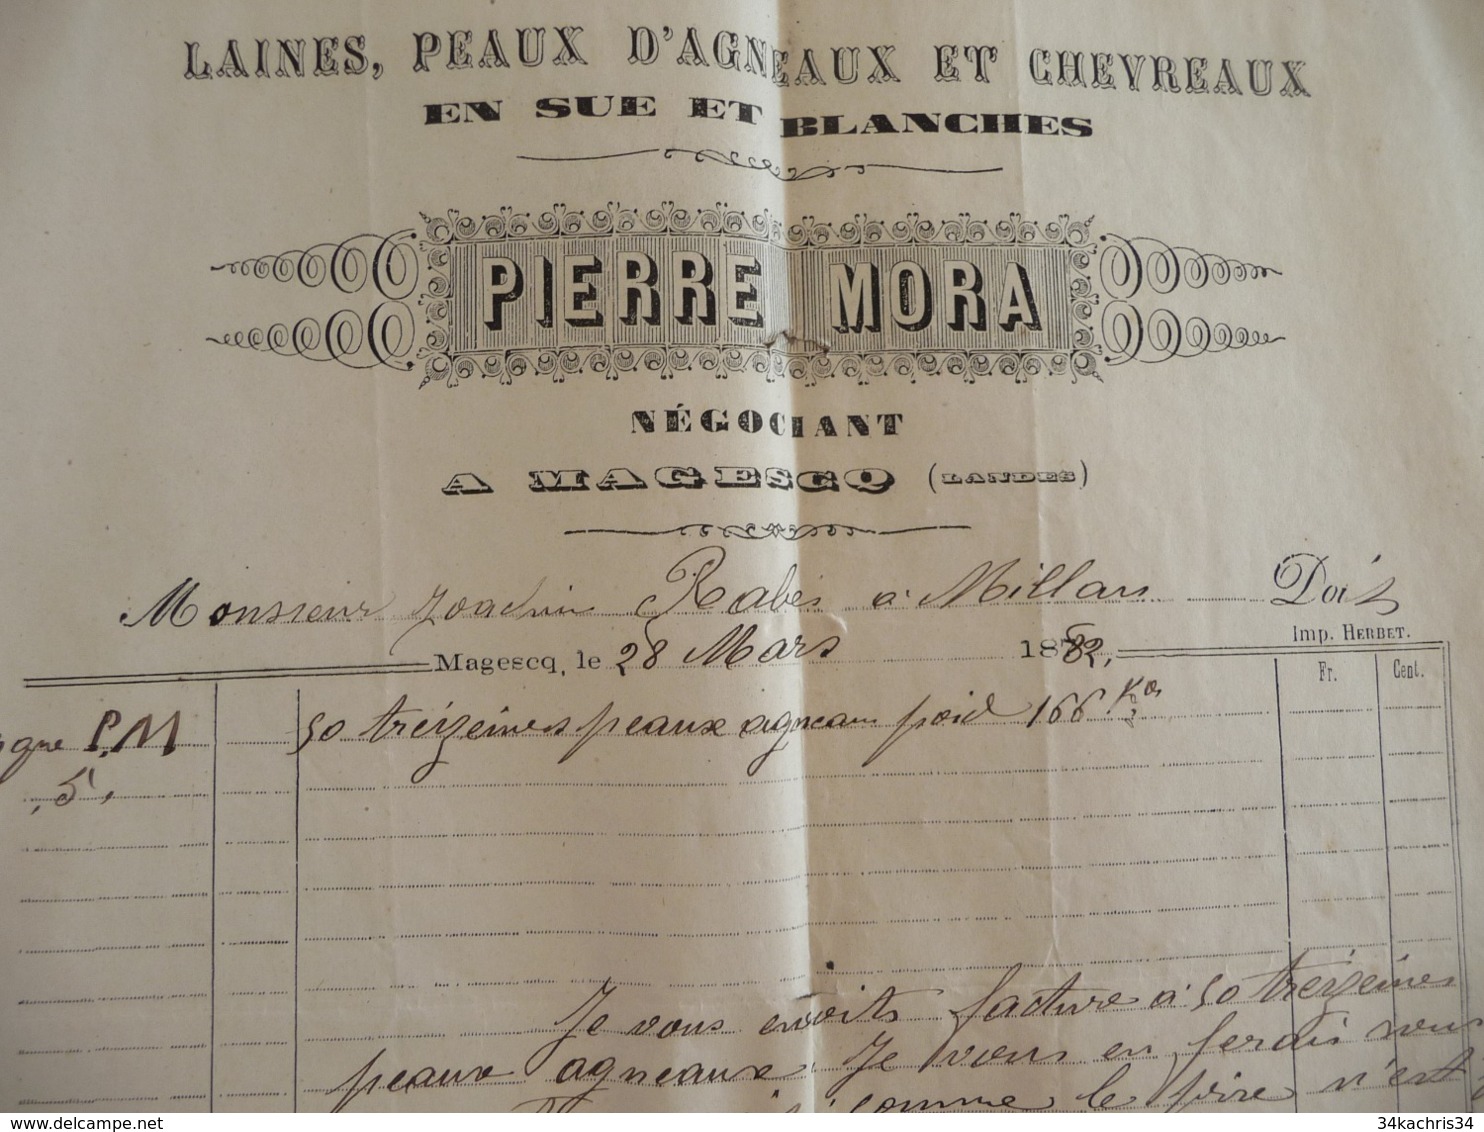 Facture Agriculture Pierre Mora Laines Peaux D'agneau Et Chevreaux 1882 Magesq Landes - Agricultura